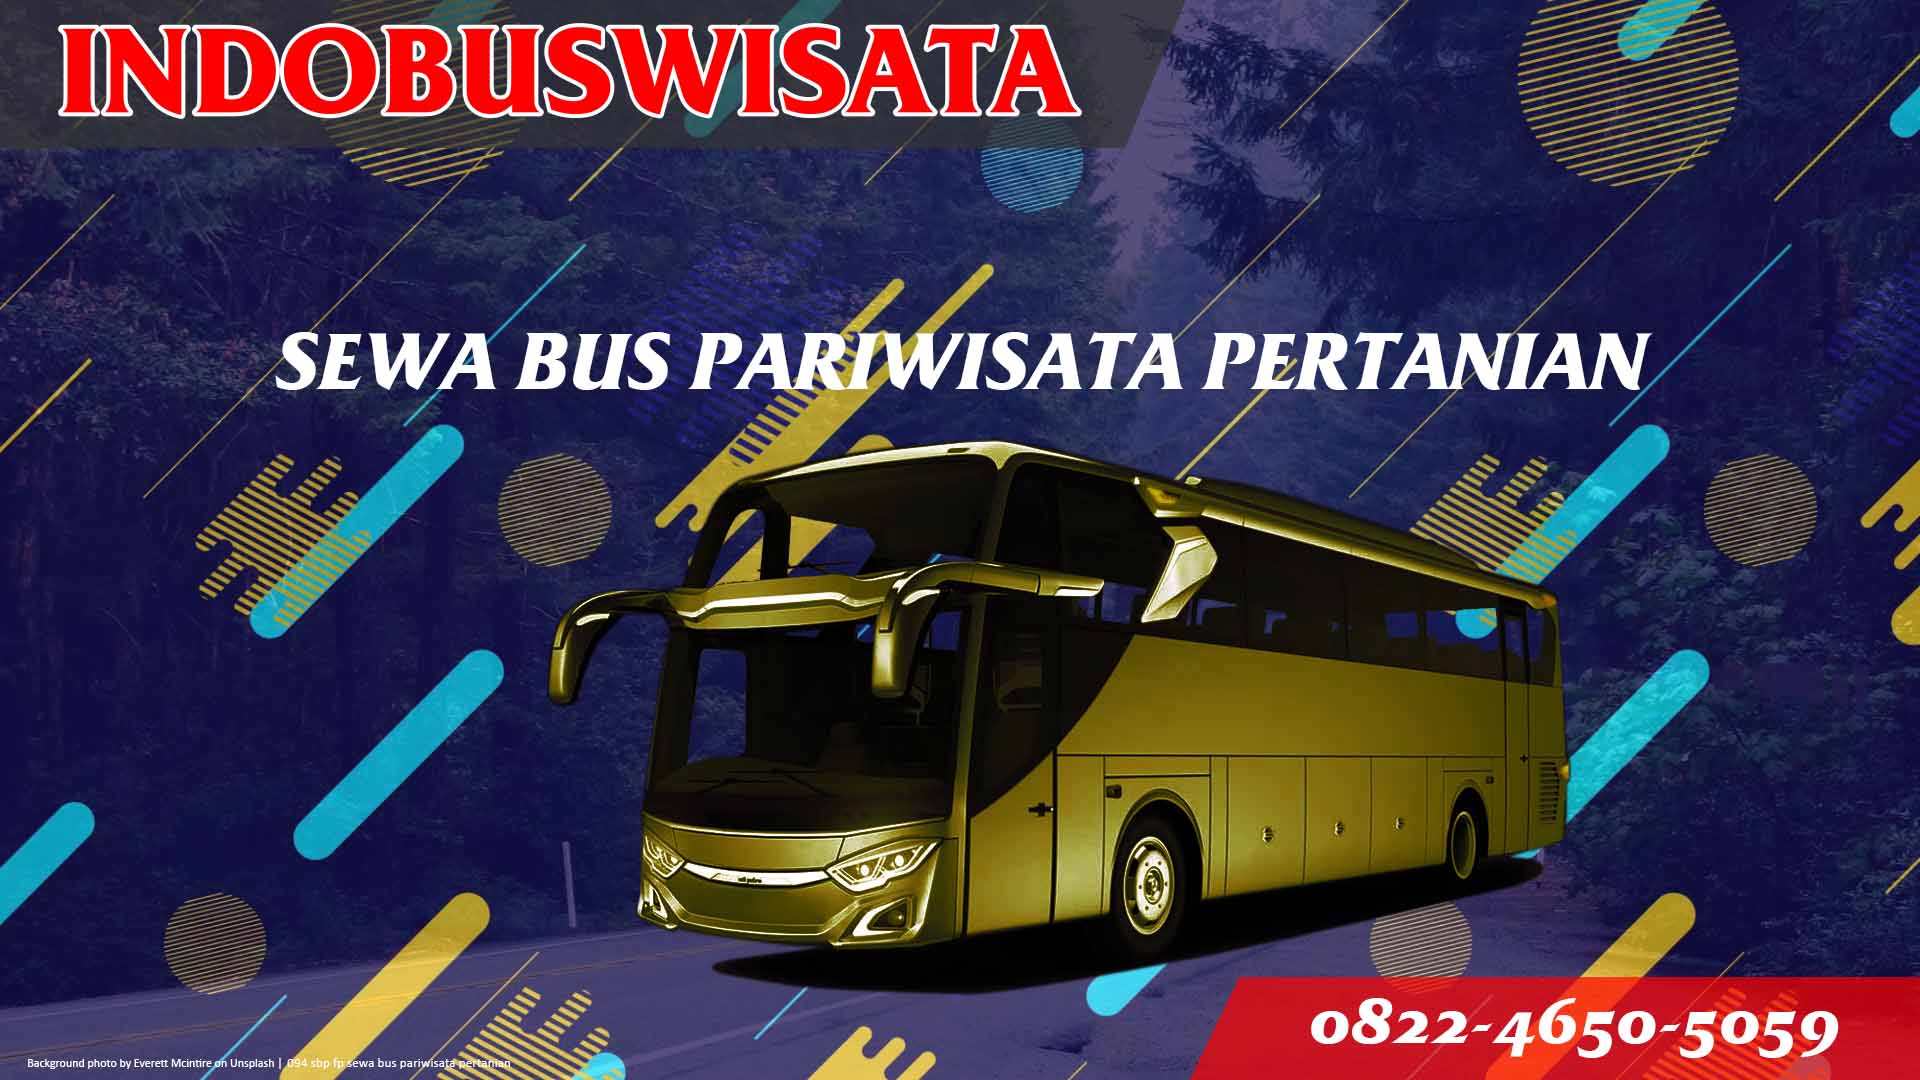 094 Sbp Fp Sewa Bus Pariwisata Pertanian Indobuswisata